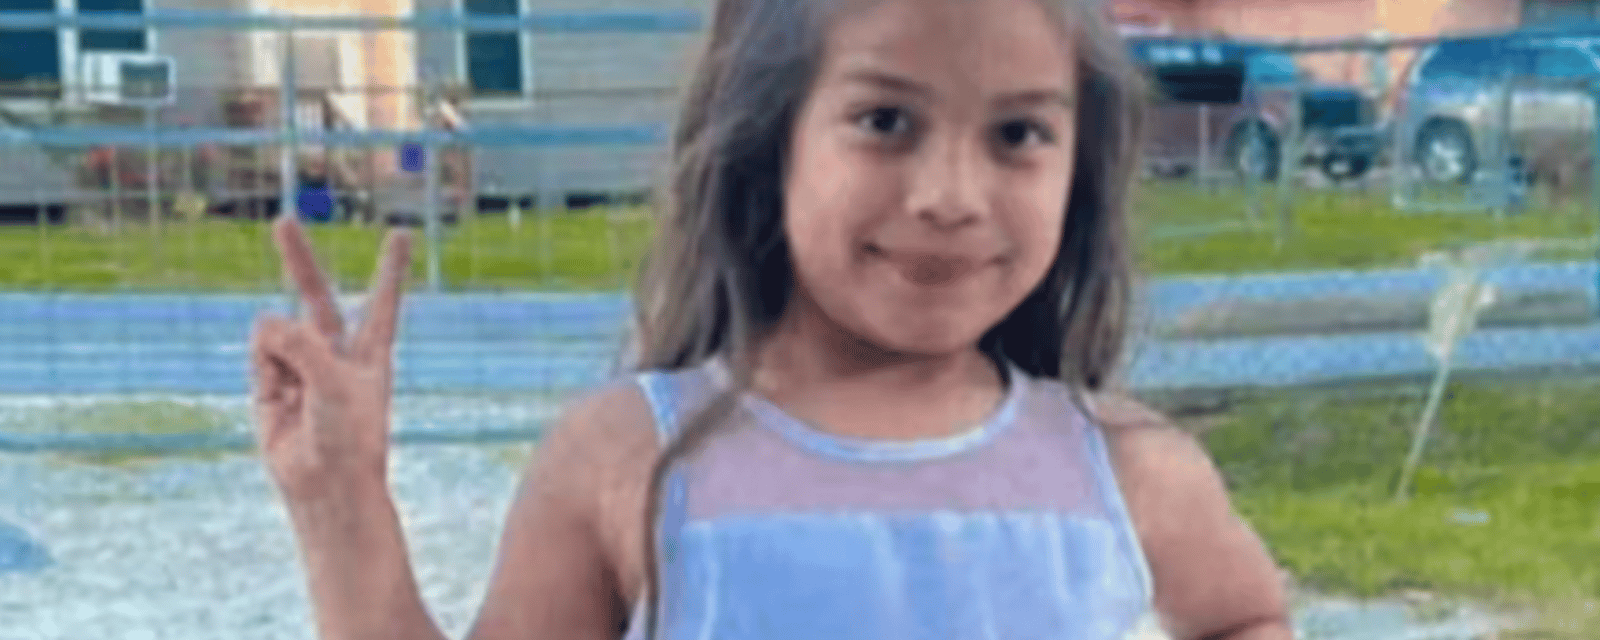 Une fillette meurt tragiquement après avoir été aspirée par le tuyau défectueux d’une piscine